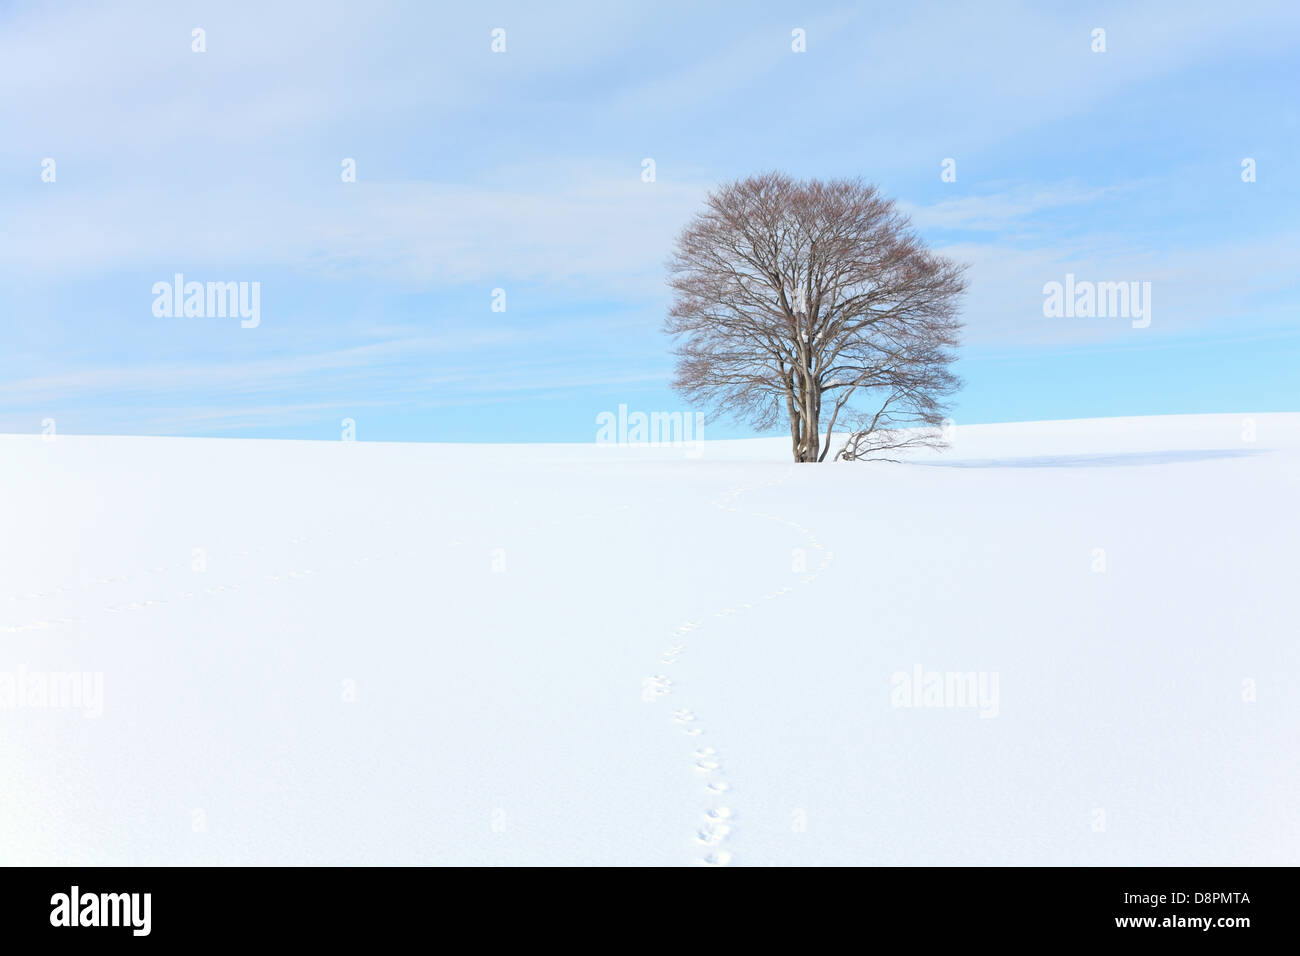 Beech tree standing in a snowy field Stock Photo